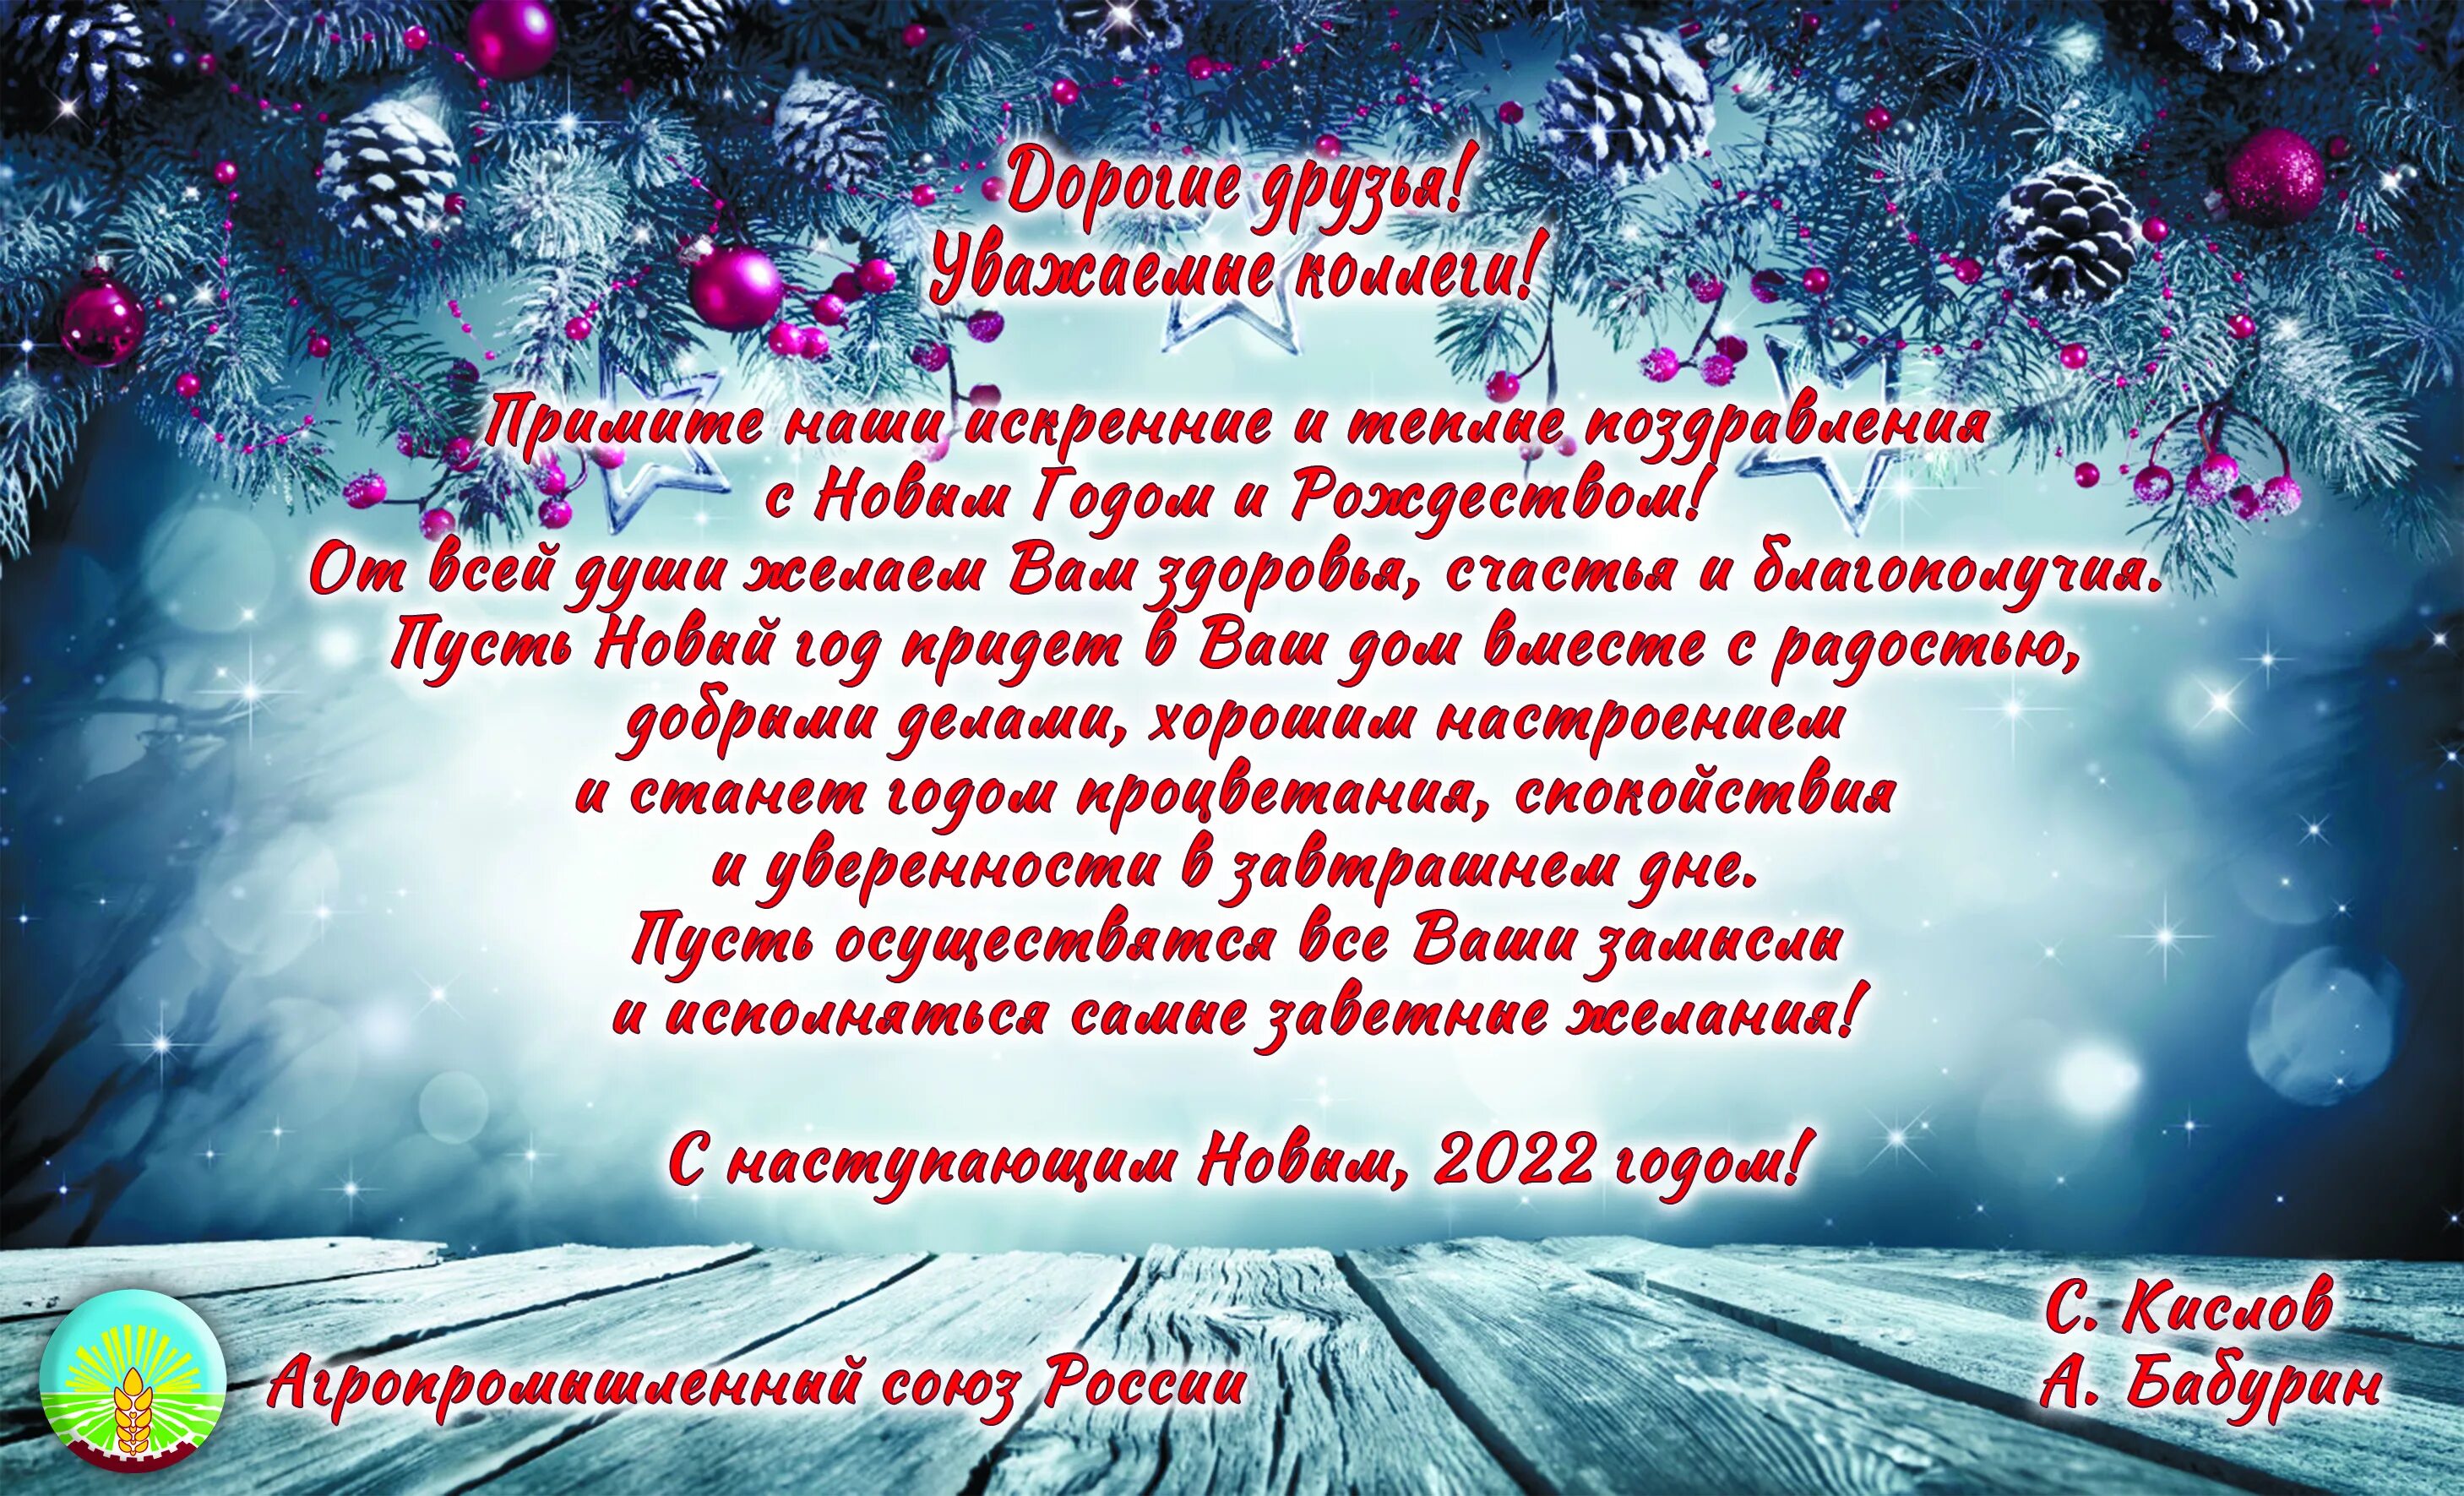 Поздравления с новым годом на Алтайском. Новогодние поздравления на Алтайском языке. С новым годом на Алтайском языке. Поздравляю с новым годом на Алтайском языке.